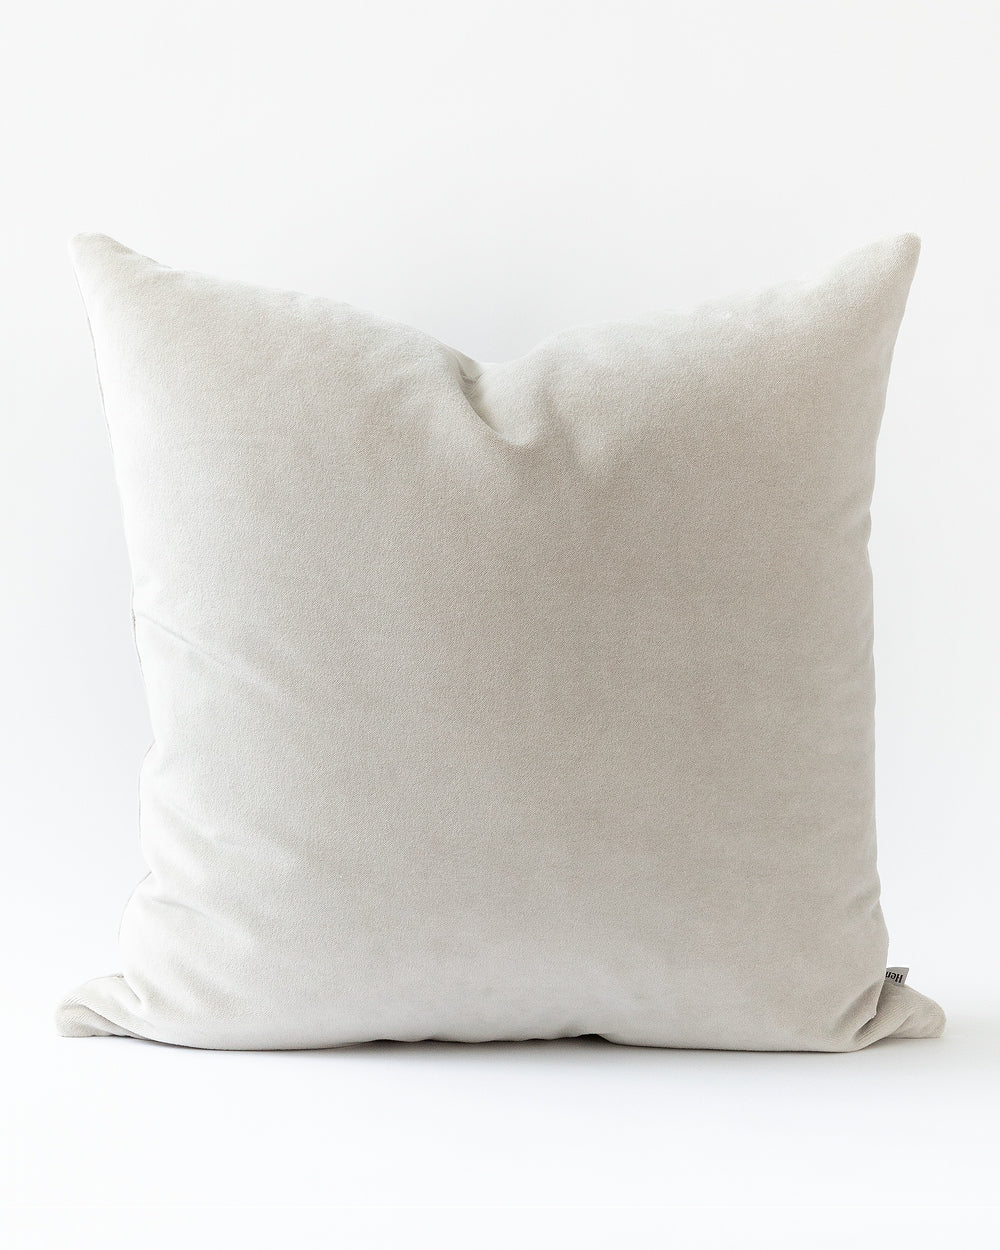 Square Warm grey velvet pillow